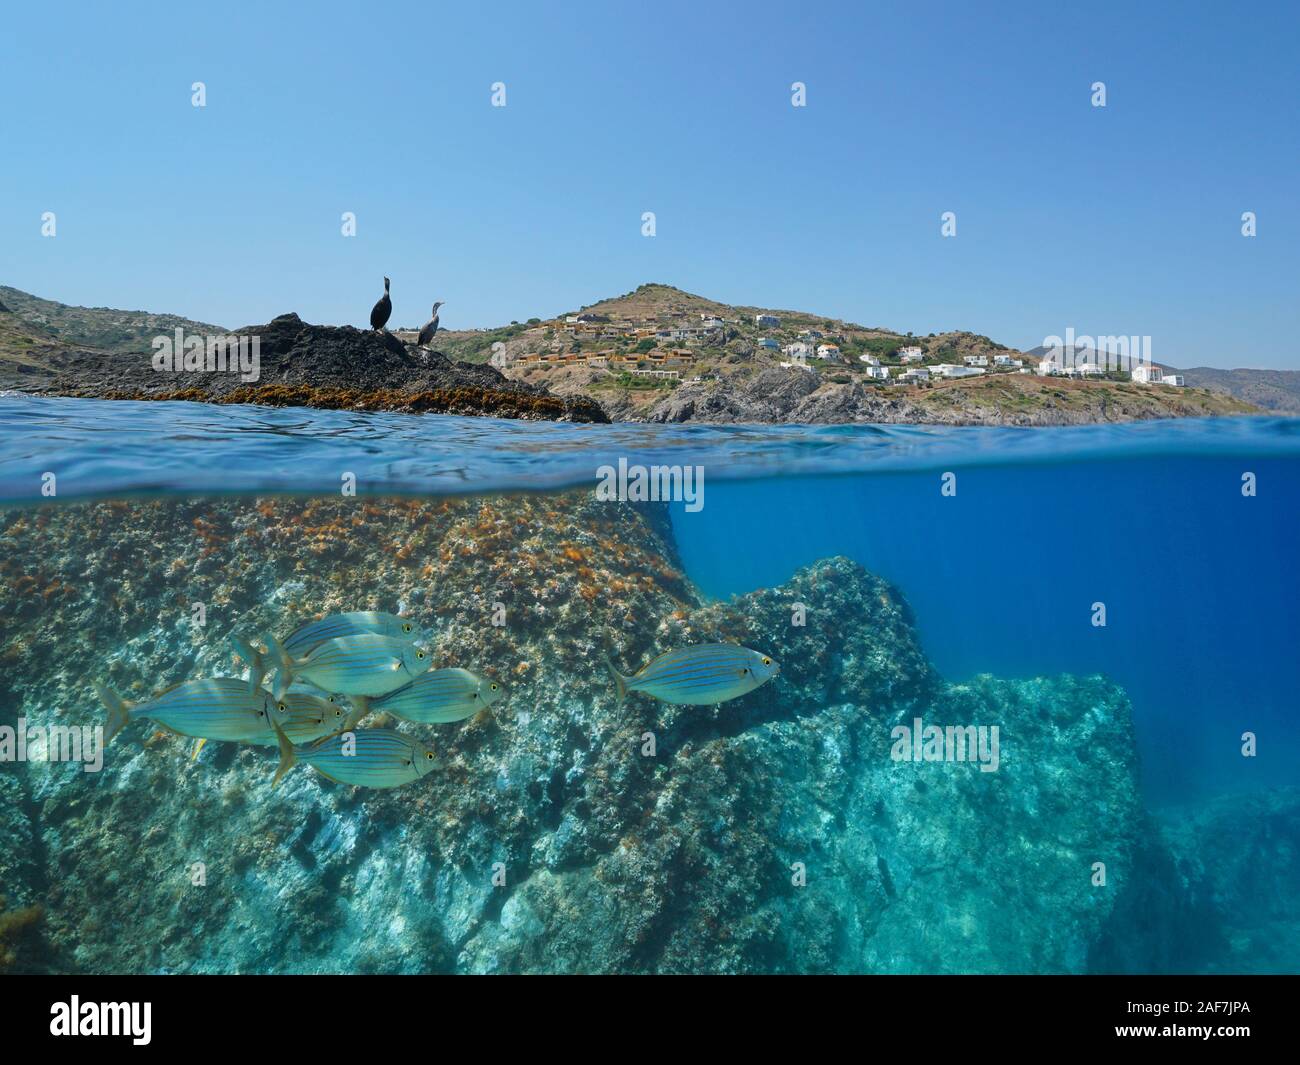 Küste mit zwei Kormoran Vögel auf Rock und Fisch, Unterwasser, Mittelmeer, geteilte Ansicht oberhalb und unterhalb der Wasseroberfläche, Spanien, Costa Brava Stockfoto